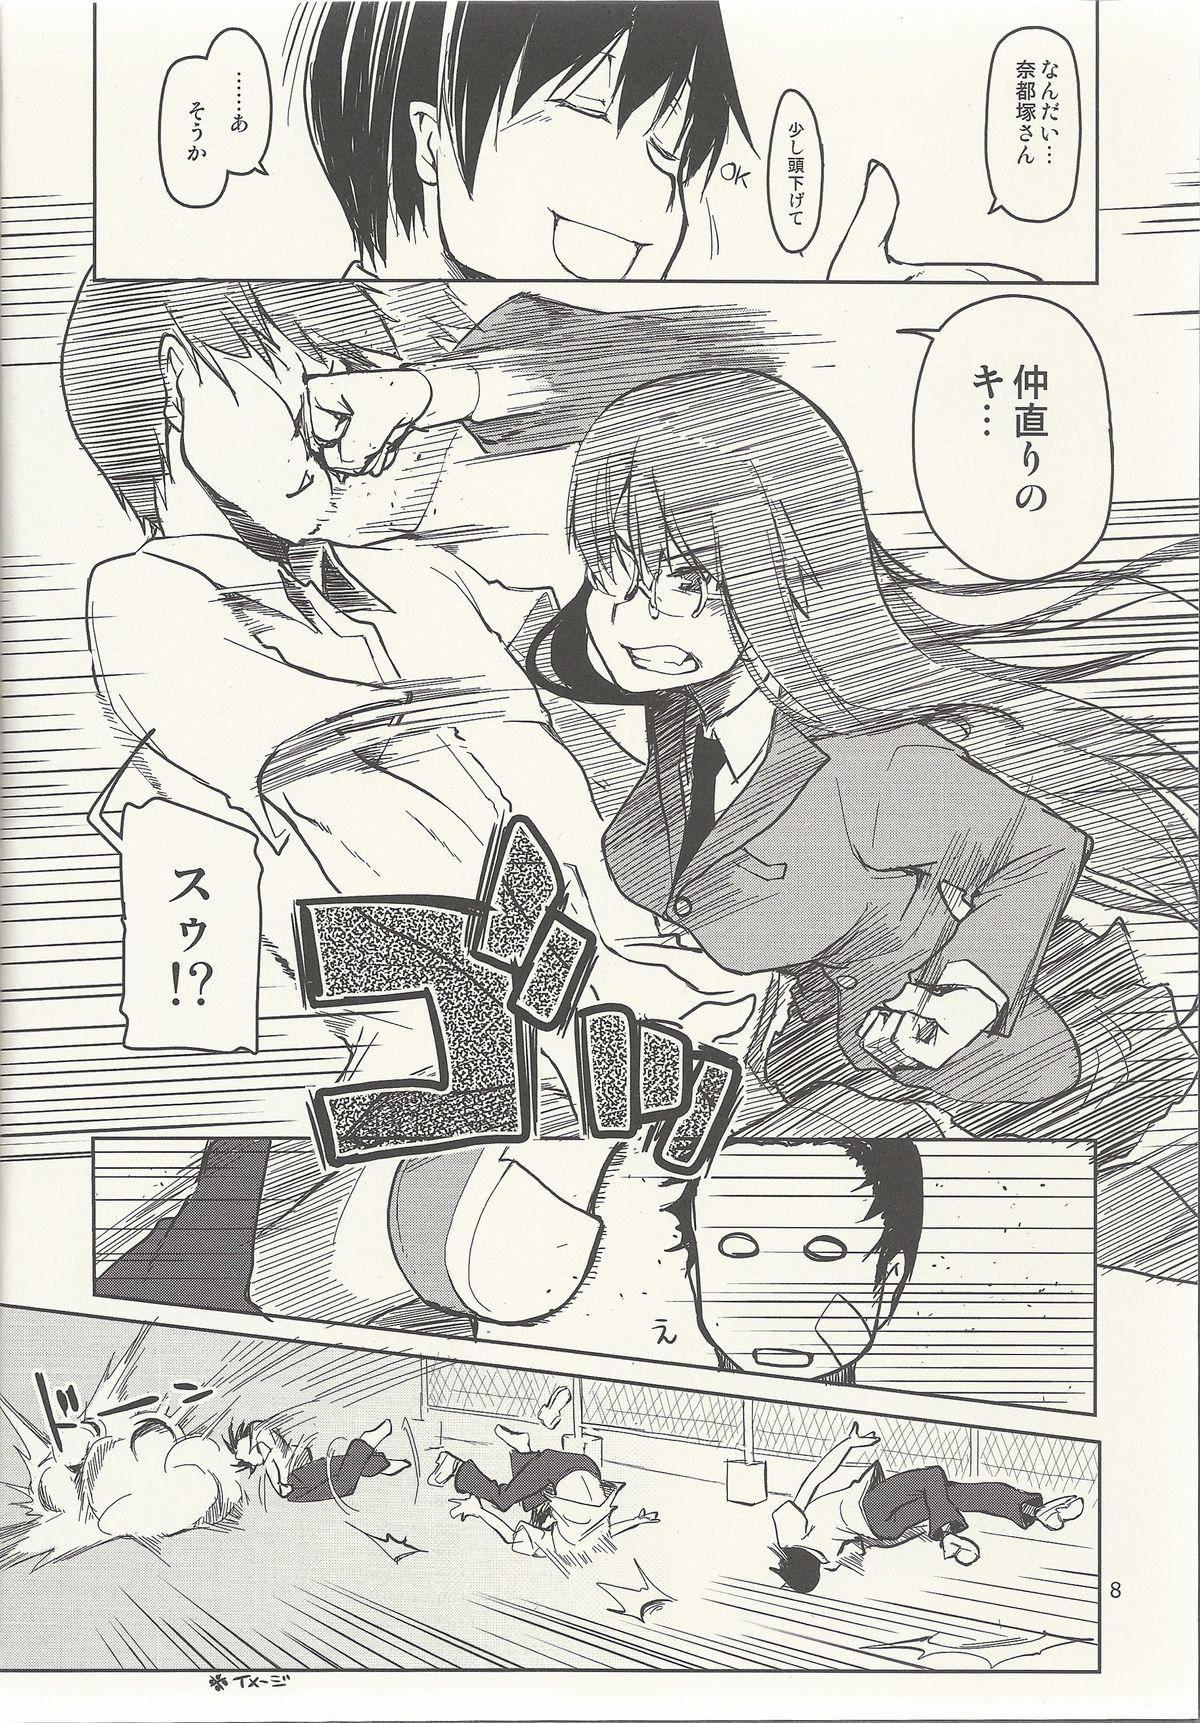 Natsuzuka-san no Himitsu. Vol. 6 Kanketsu Hen 9